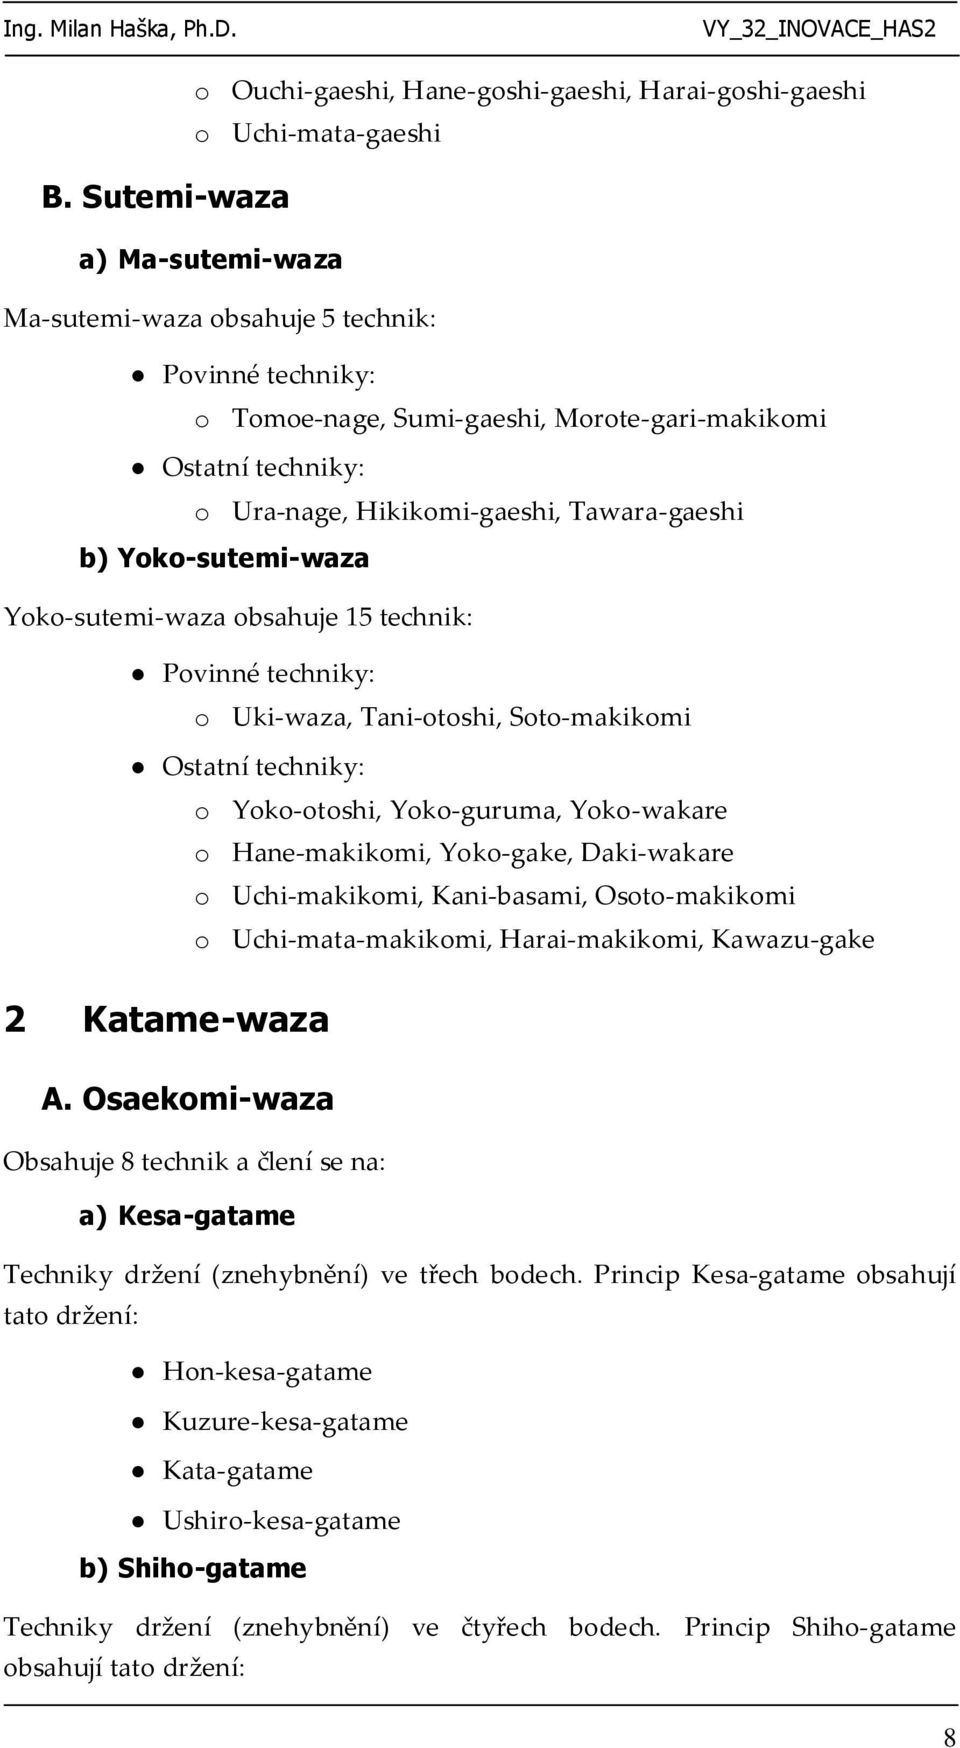 Ostatní techniky: o Yoko-otoshi, Yoko-guruma, Yoko-wakare o Hane-makikomi, Yoko-gake, Daki-wakare o Uchi-makikomi, Kani-basami, Osoto-makikomi o Uchi-mata-makikomi, Harai-makikomi, Kawazu-gake 2